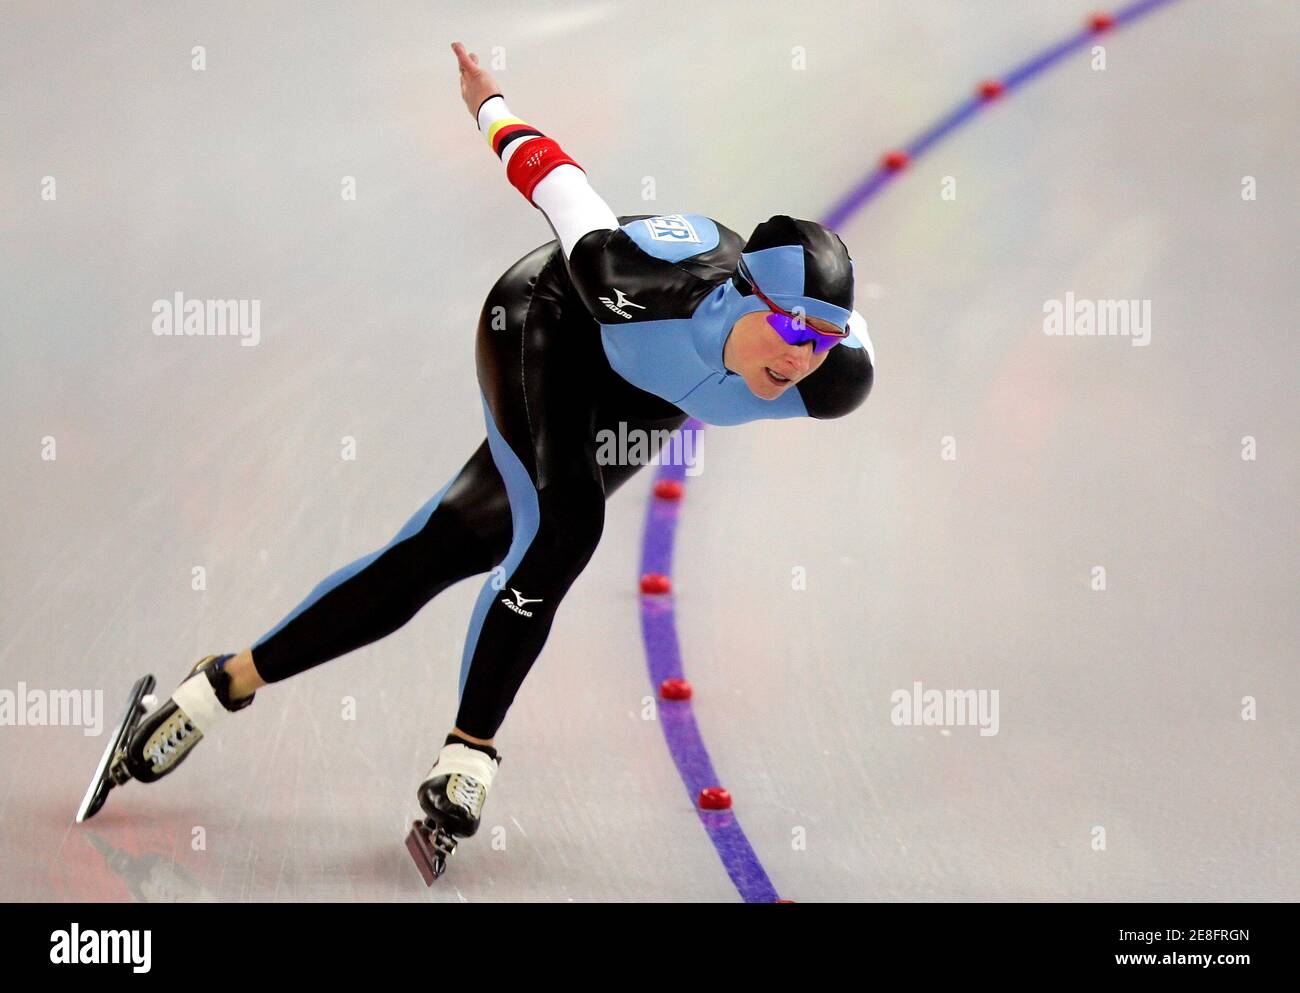 La alemana Claudia Pechstein compite en la carrera femenina de patinaje a velocidad de 3000 metros en los Juegos Olímpicos de Invierno de Turín 2006 en Turín, Italia 12 de febrero de 2006. REUTERS/Jerry Lampen Foto de stock